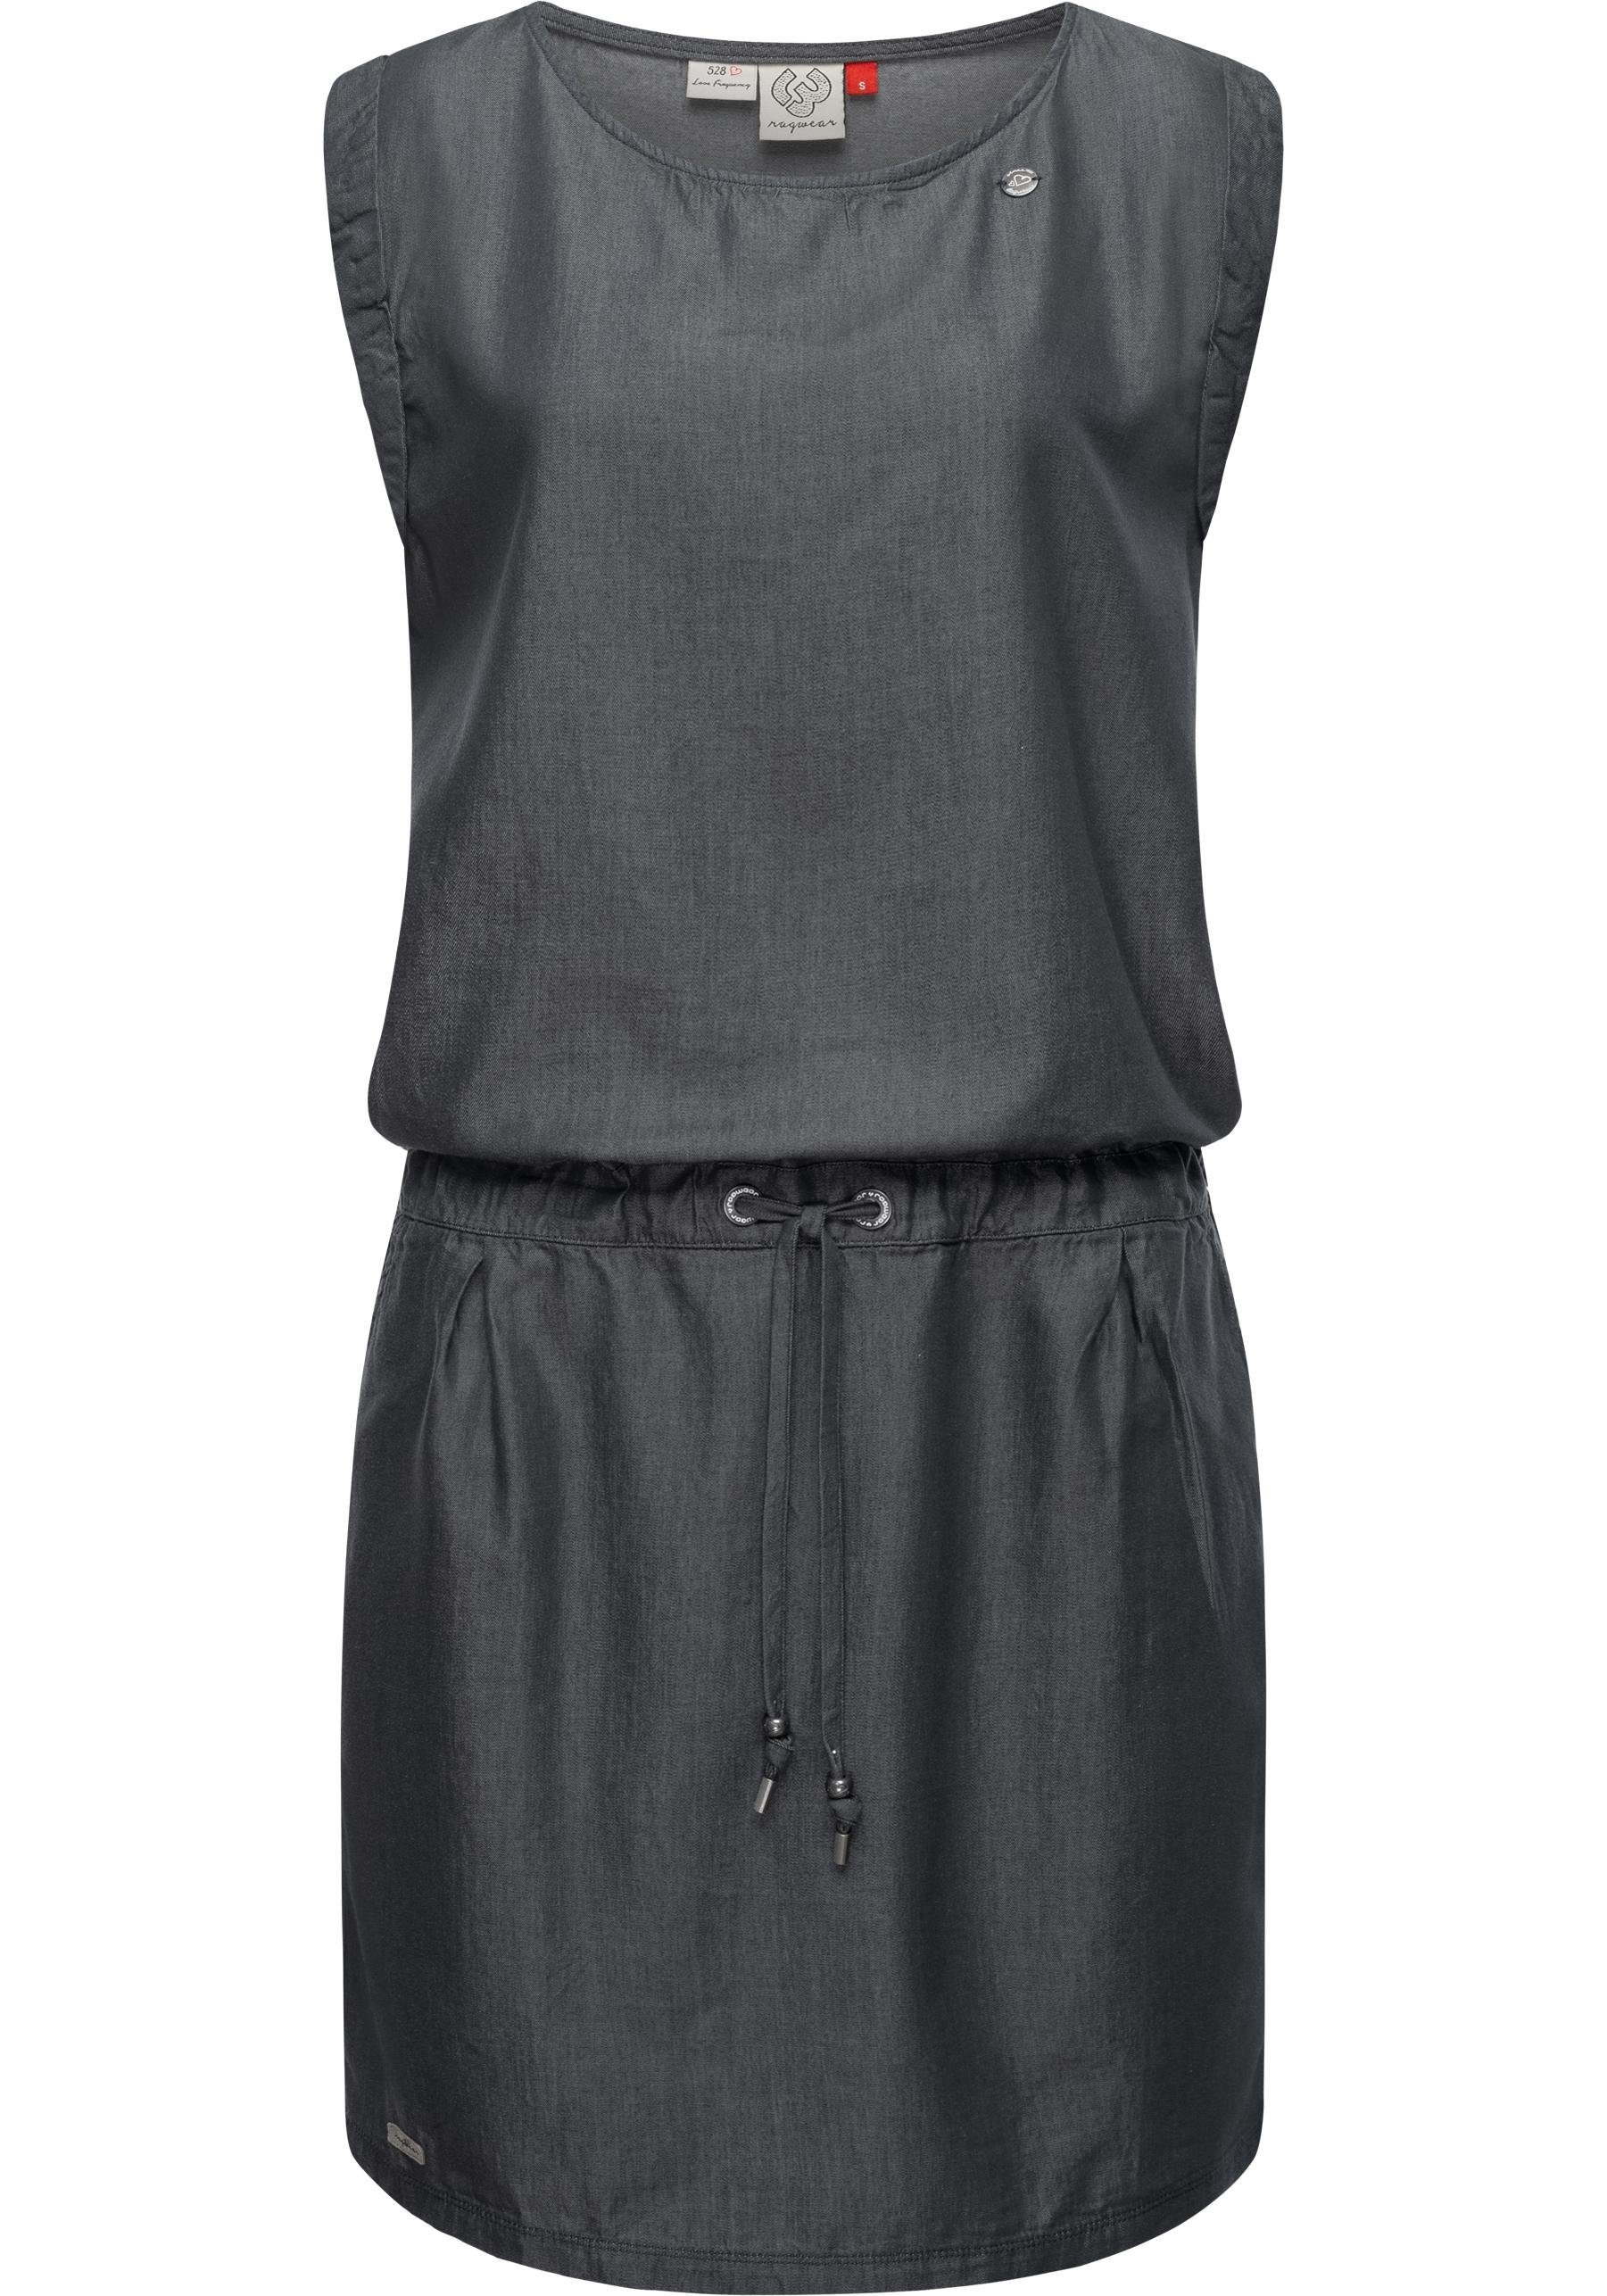 Ragwear Shirtkleid Mascarpone Denim stylisches Sommerkleid mit Bindeband an der Taille dunkelgrau